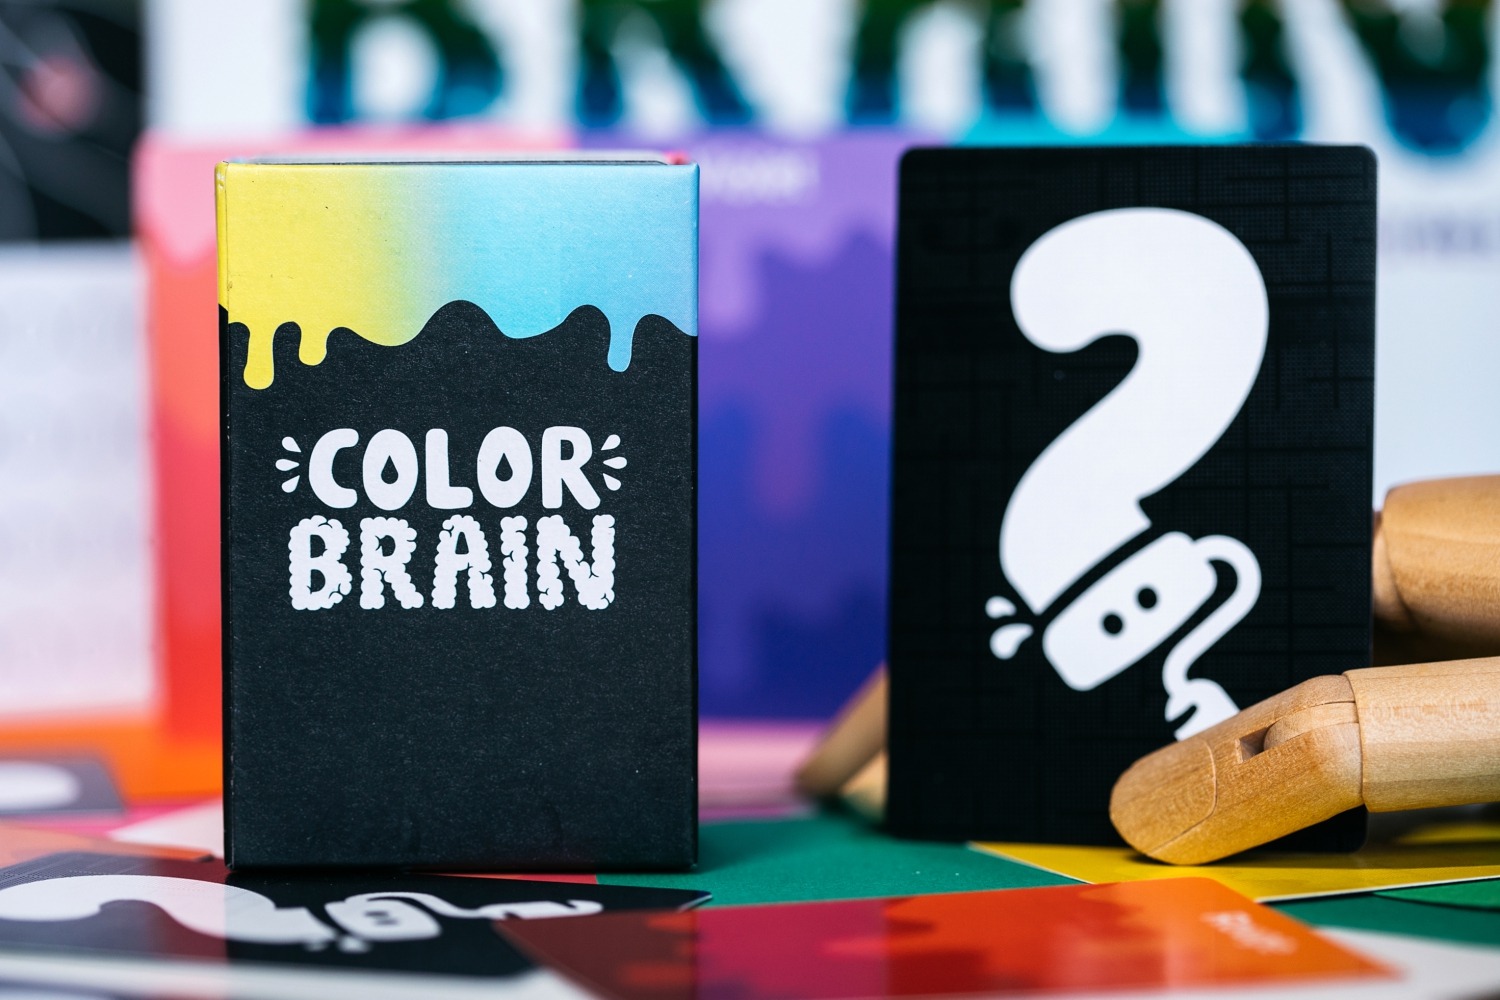 Color Brain Big potato games jeu quizz blackrock games